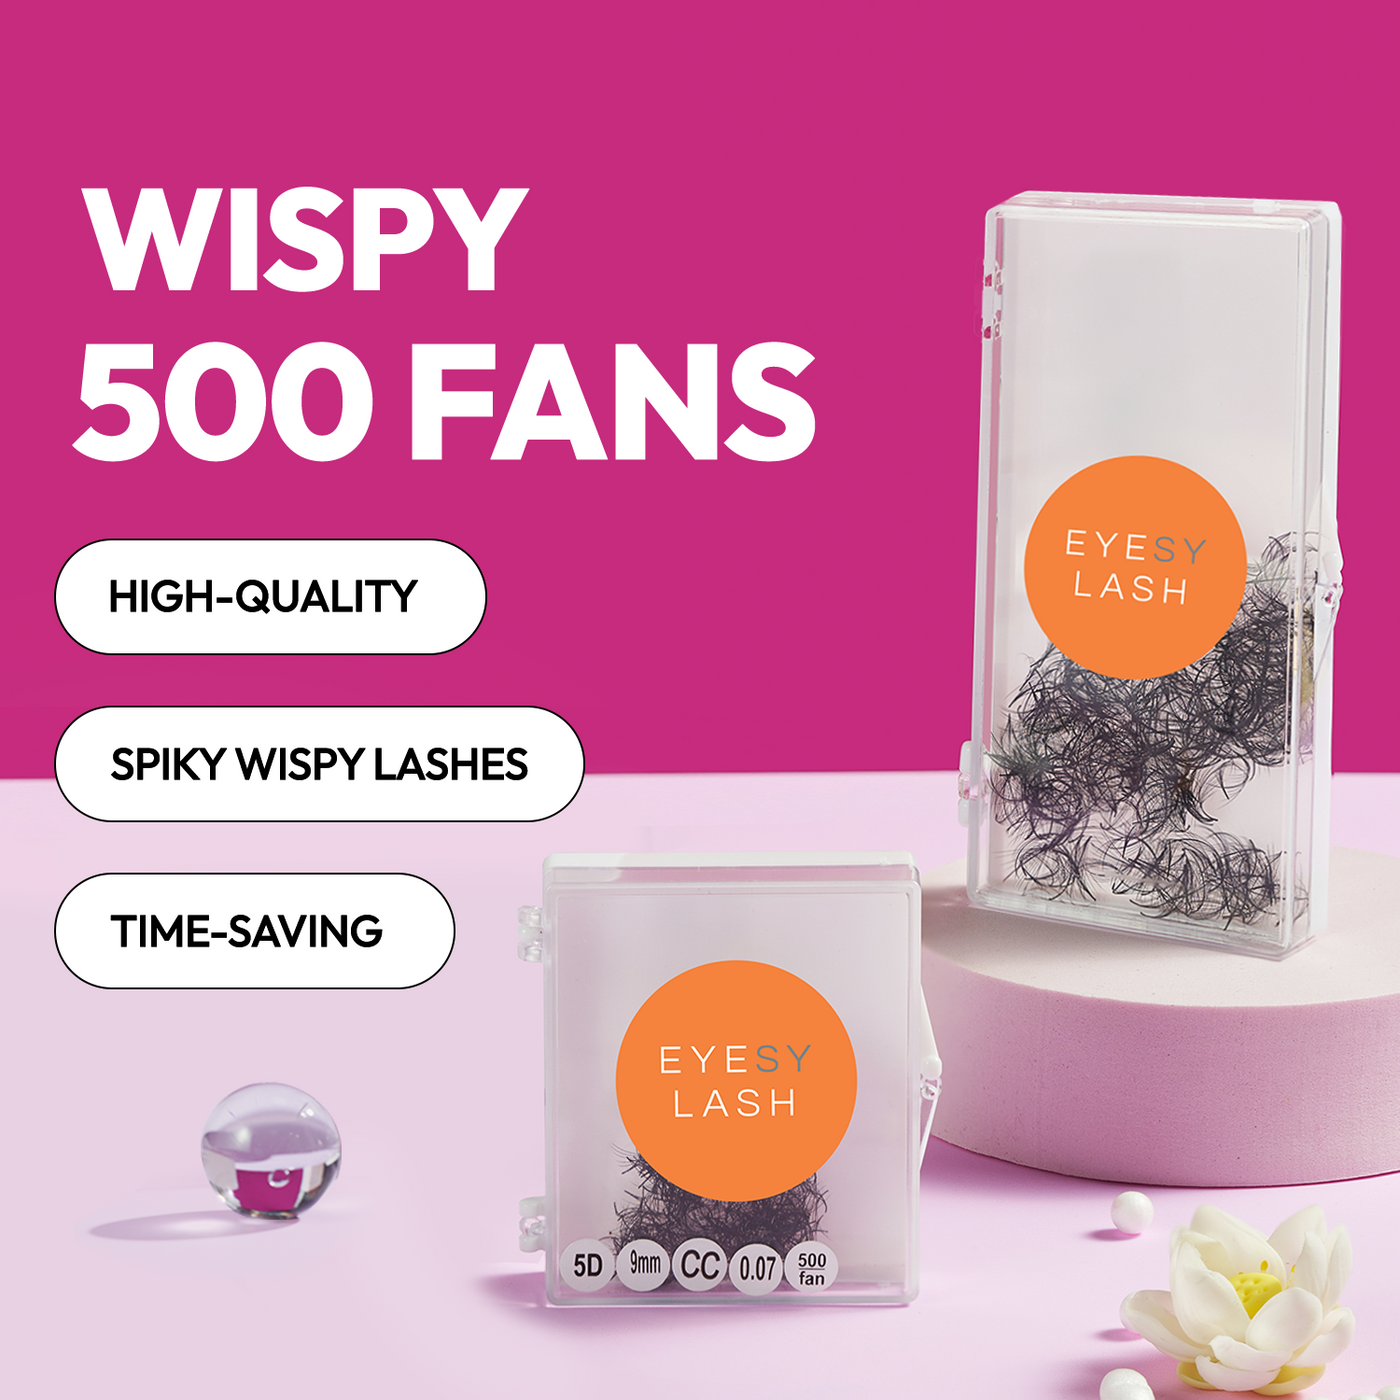 Wispy Fans 5D 0.07 500 fans